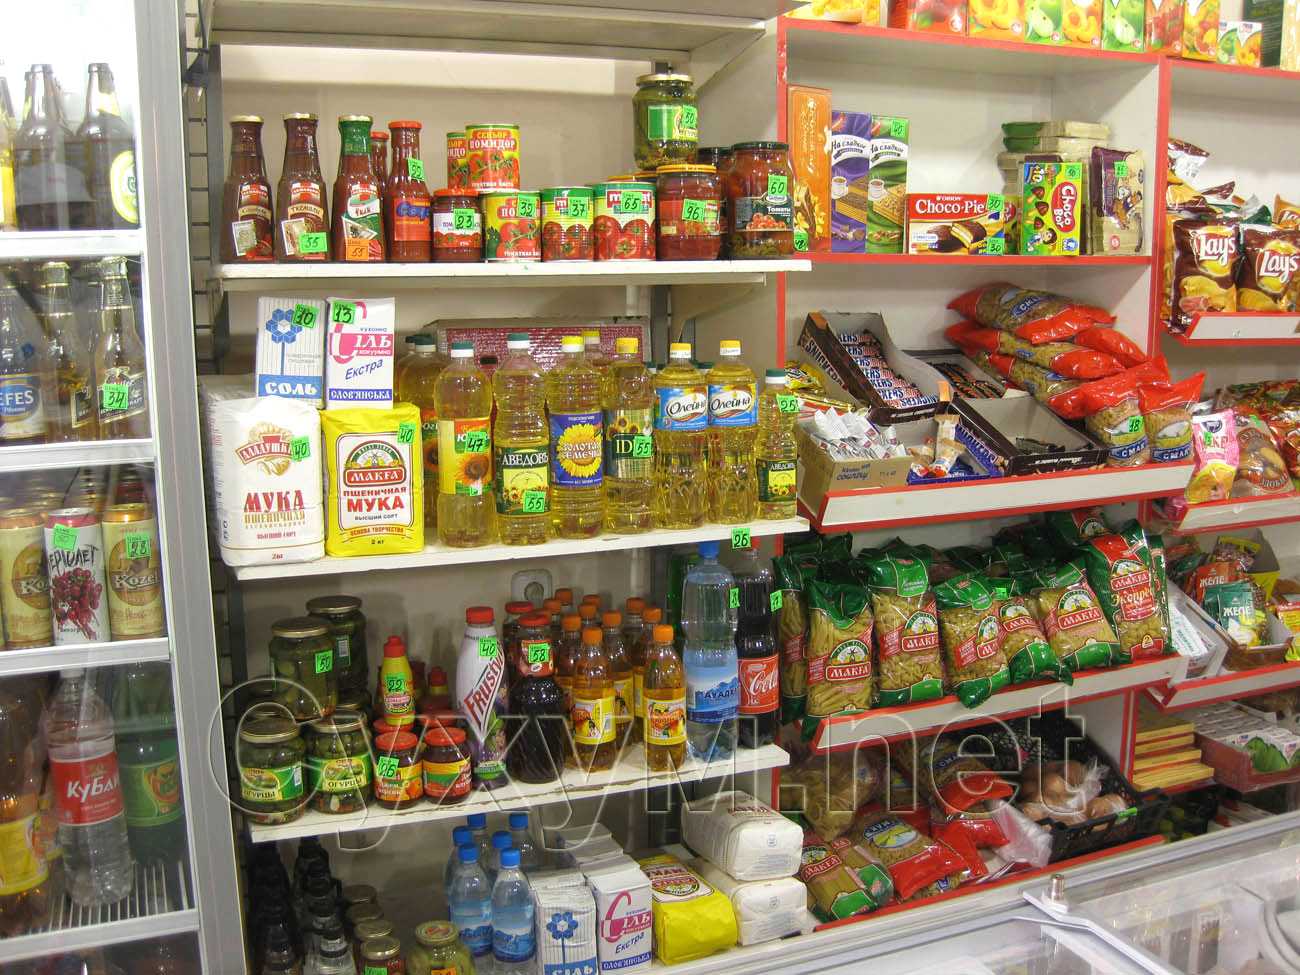 продуктовый магазин и аптека на остановке - подсолнечное масло и макароны